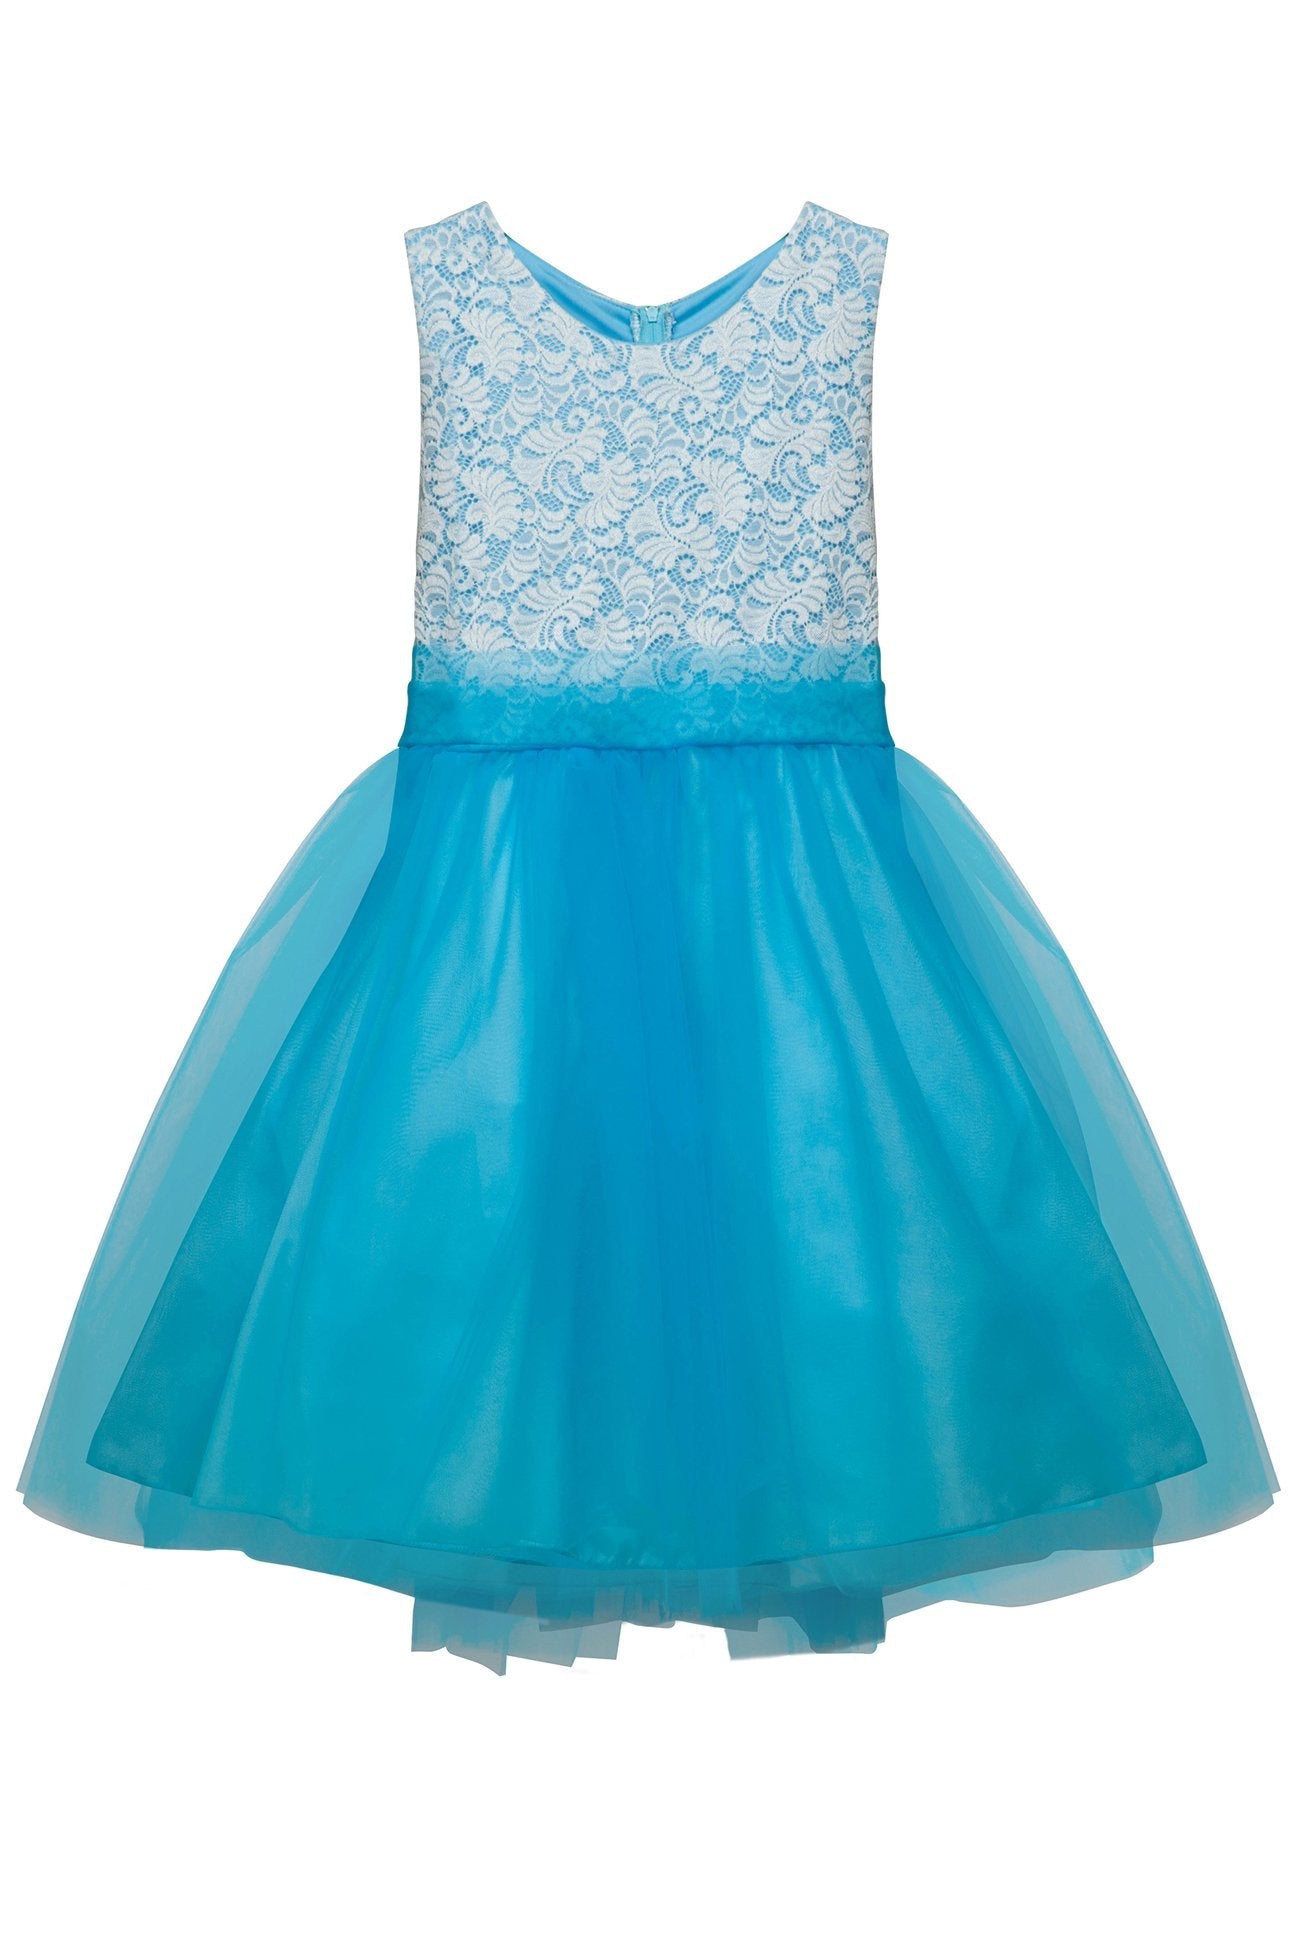 Stretch Lace Plus Size Girls Dress – Kid's Dream